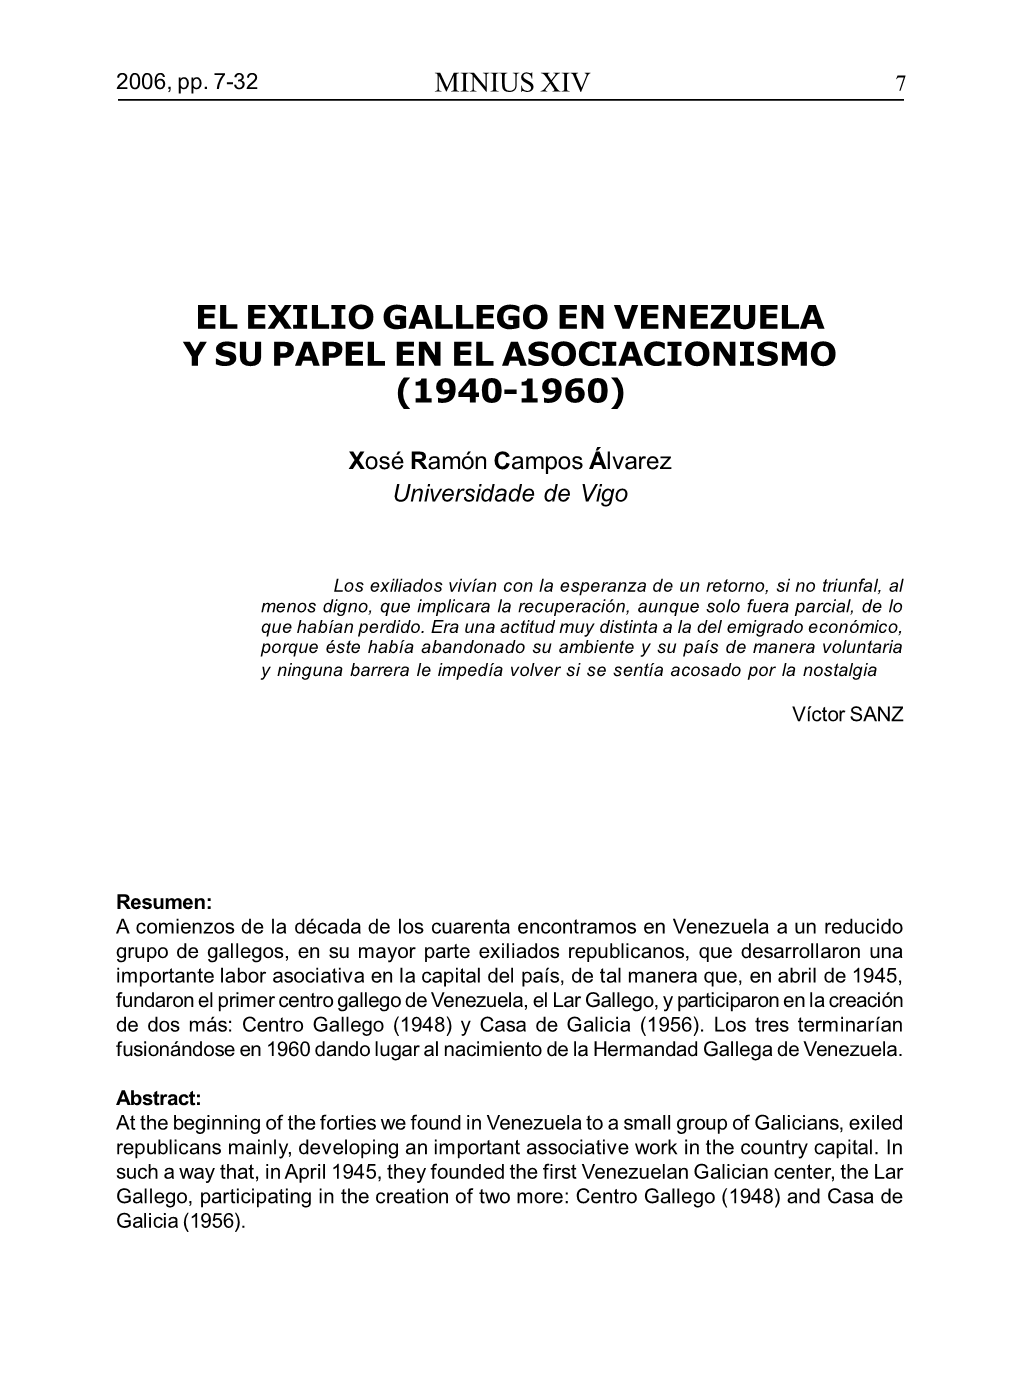 El Exilio Gallego En Venezuela Y Su Papel En El Asociacionismo (1940-1960)